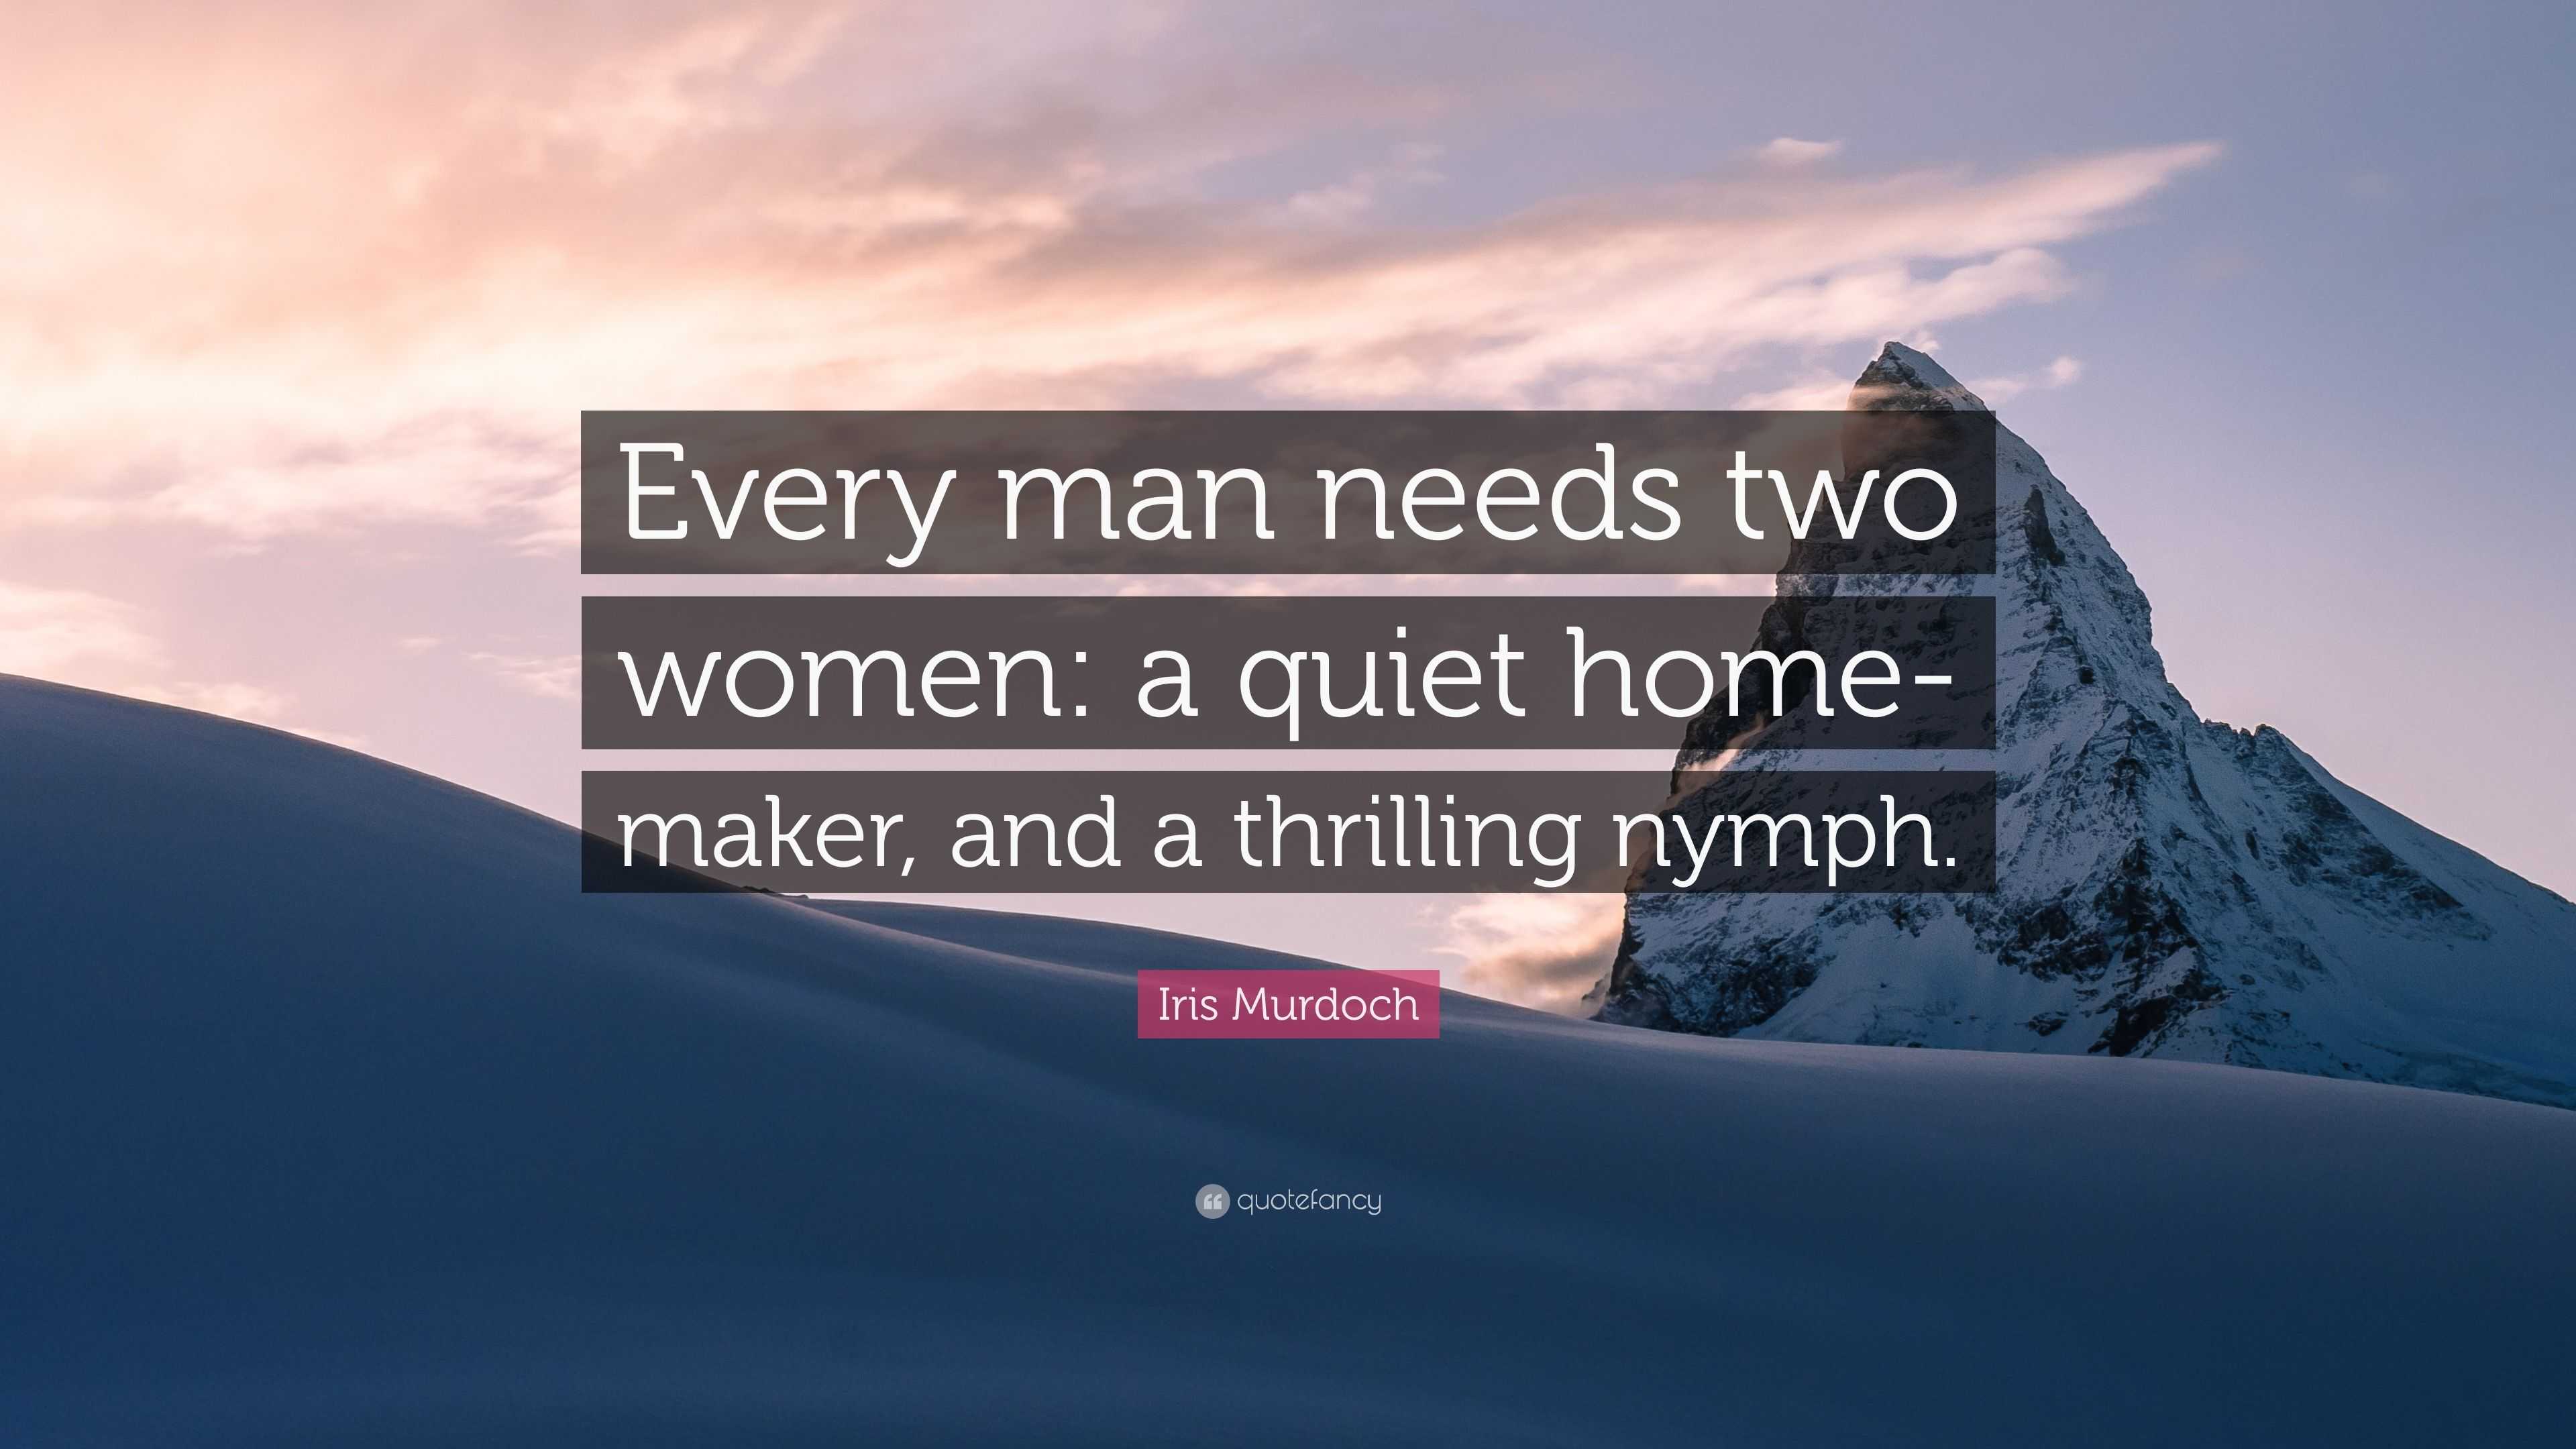 Iris Murdoch - Every man needs two women: a quiet home